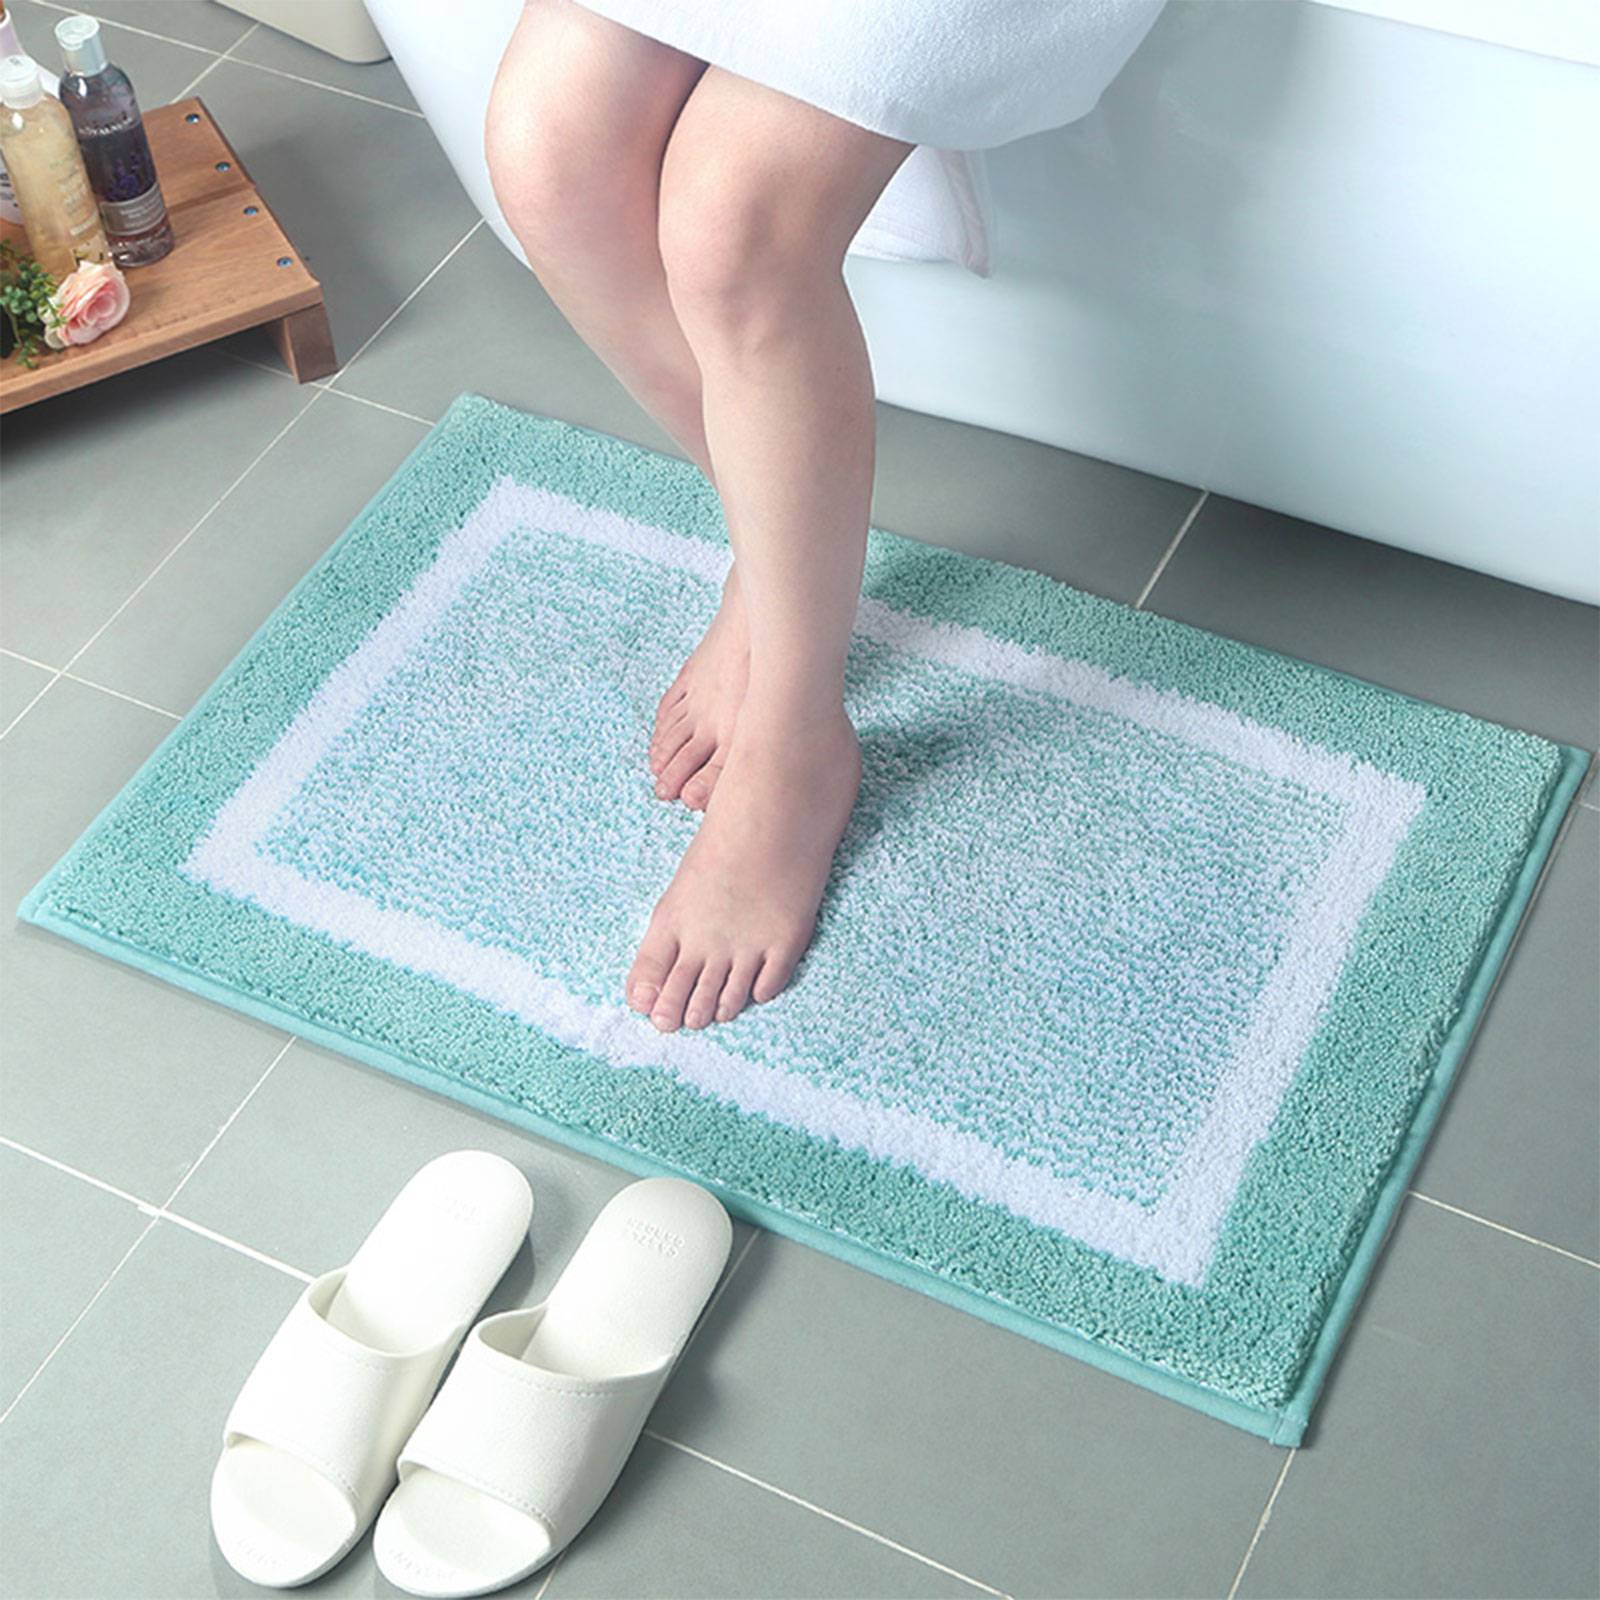 Как выбрать лучший коврик для ванной | онлайн-журнал о ремонте и дизайне